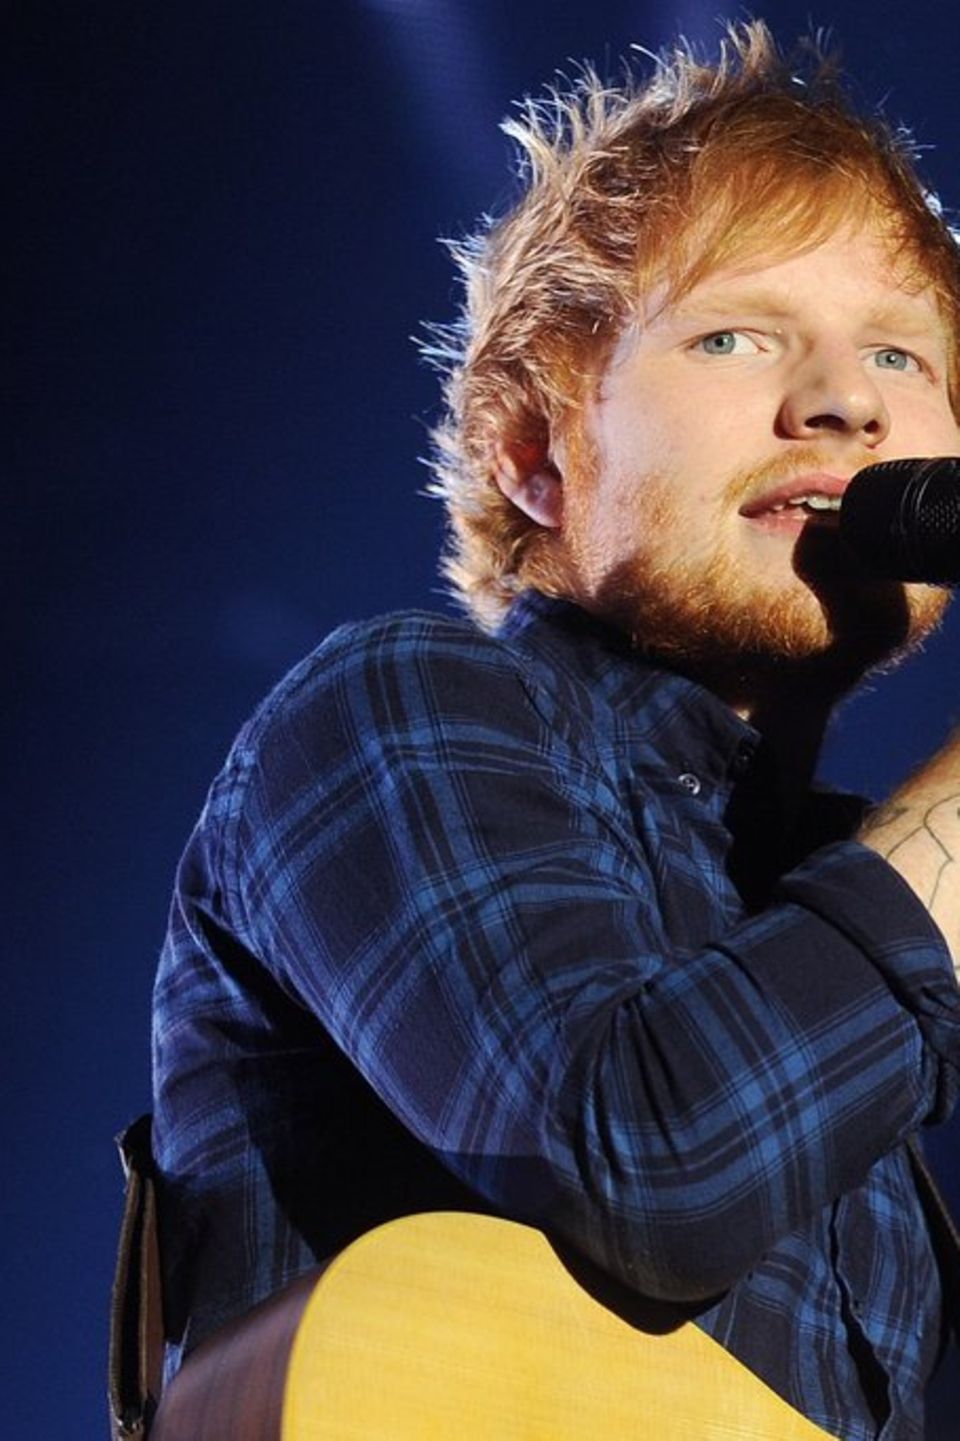 Musiker Ed Sheeran gewann für seinen Song "Thinking Out Loud" aus dem Jahr 2014 einen Grammy.